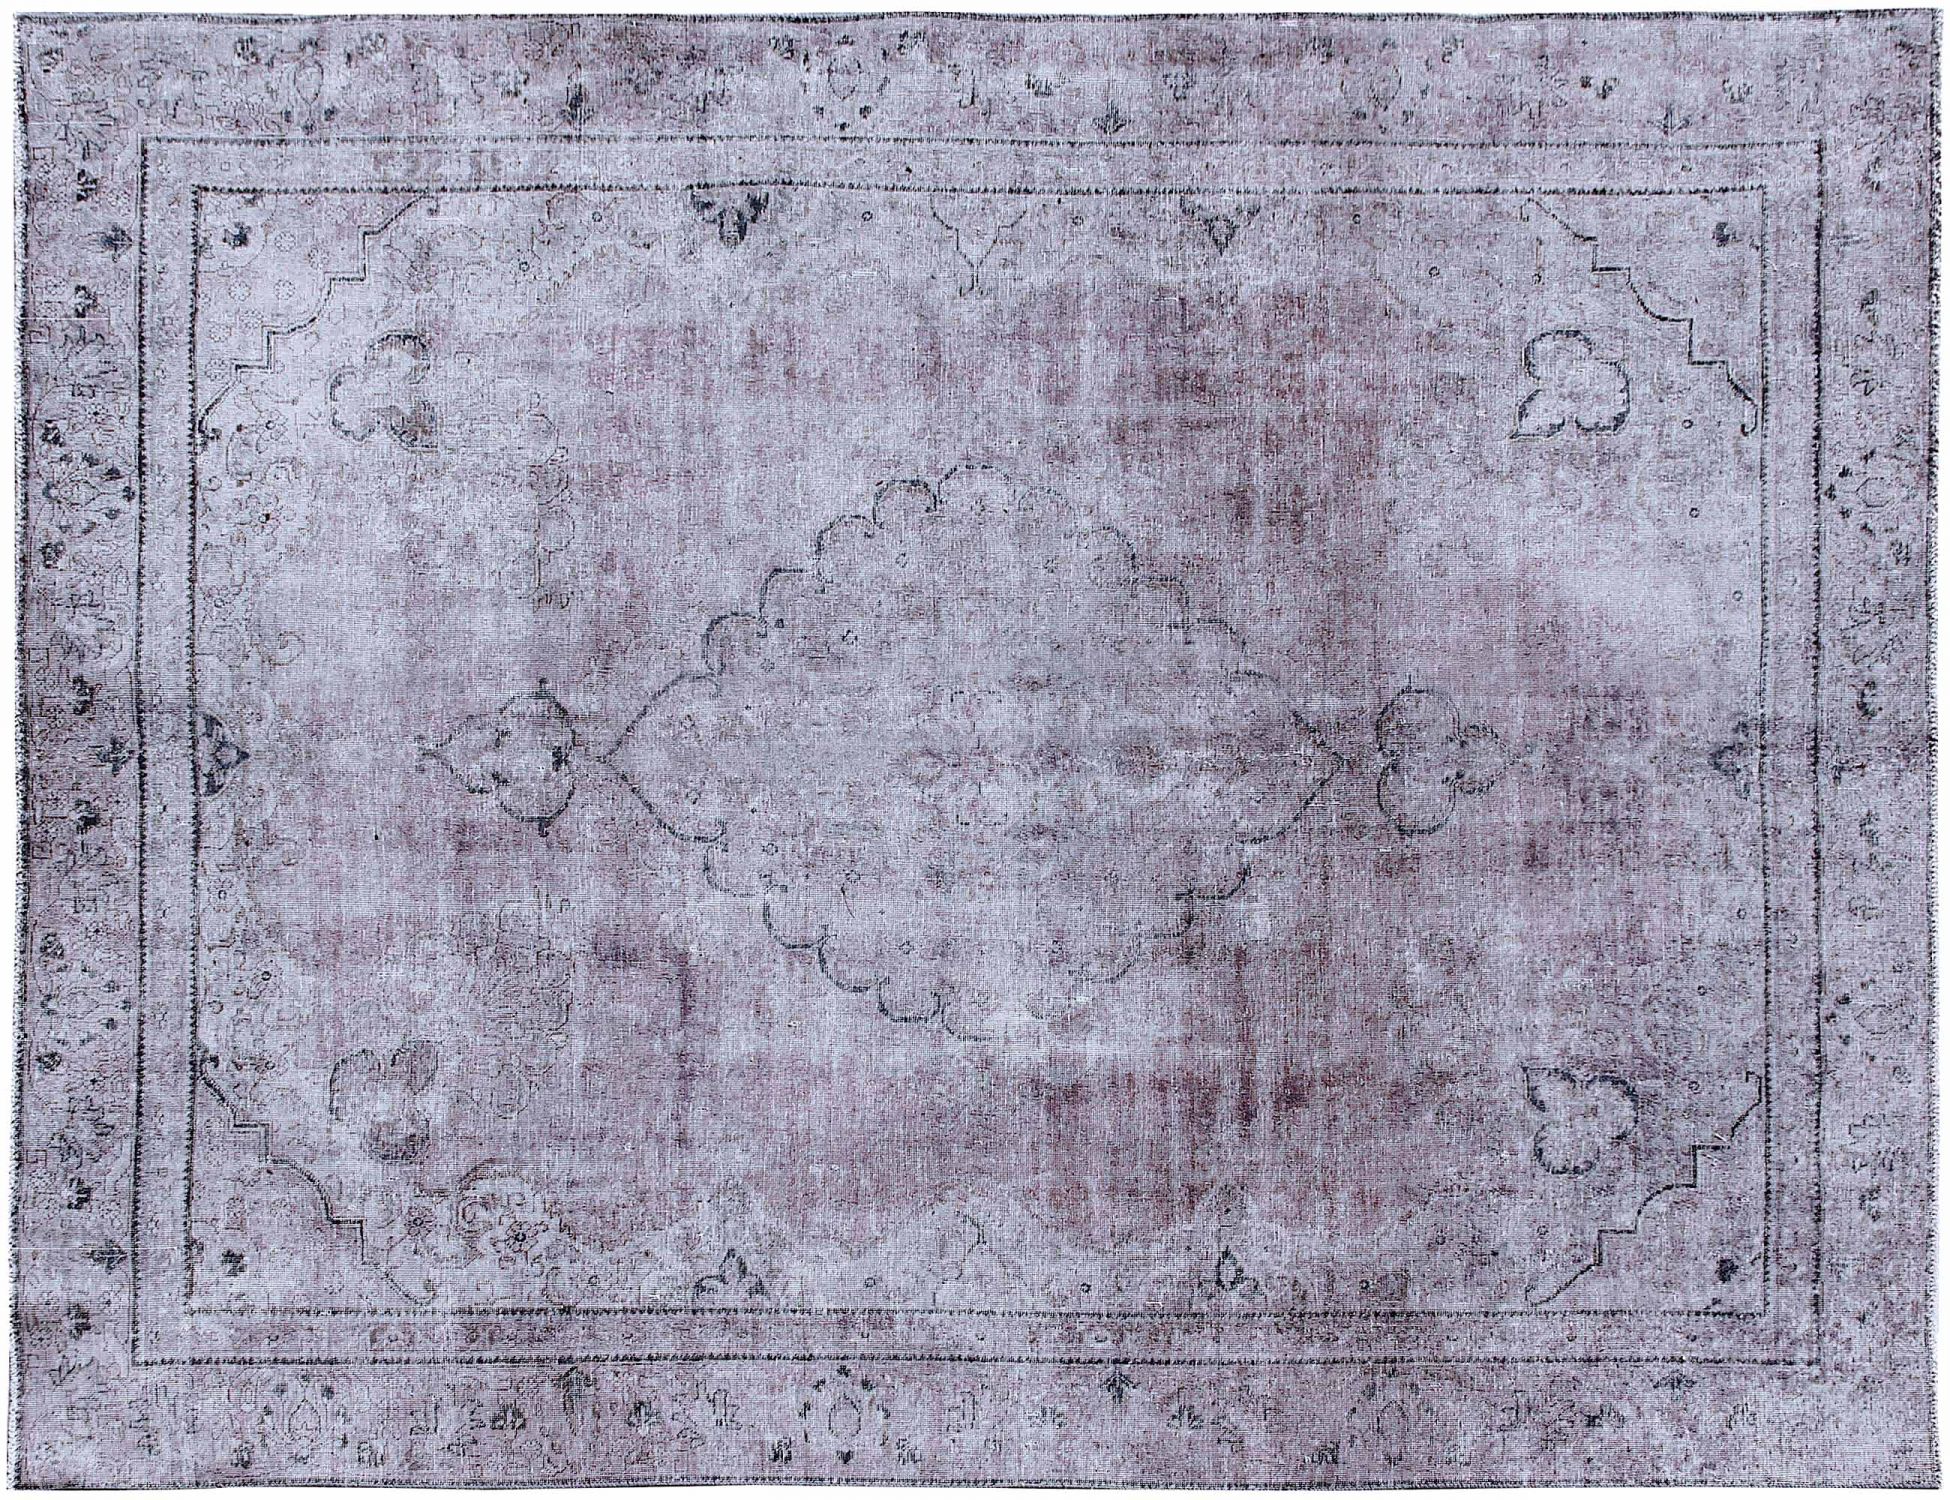 Persischer Vintage Teppich  lila <br/>363 x 271 cm